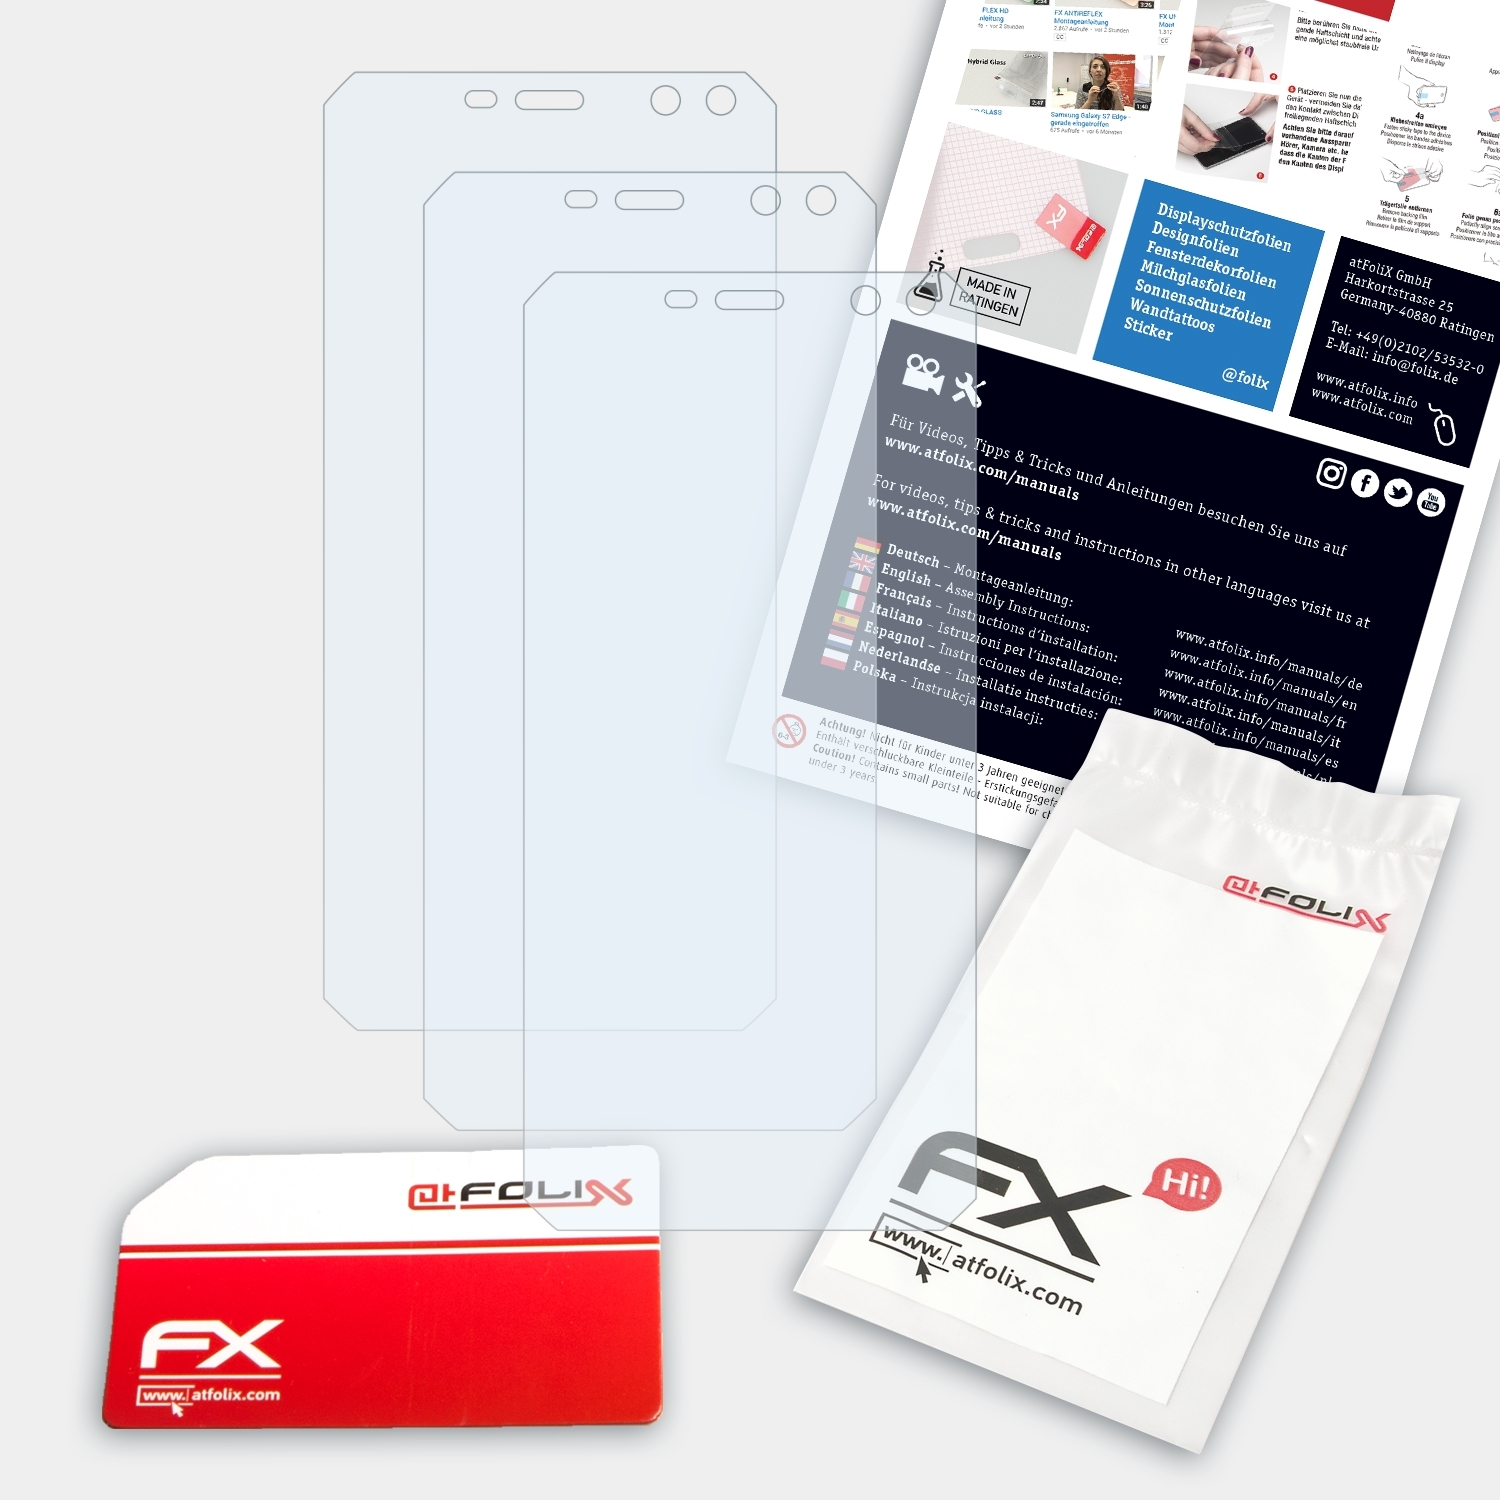 Nomu FX-Clear ATFOLIX M6) 3x Displayschutz(für